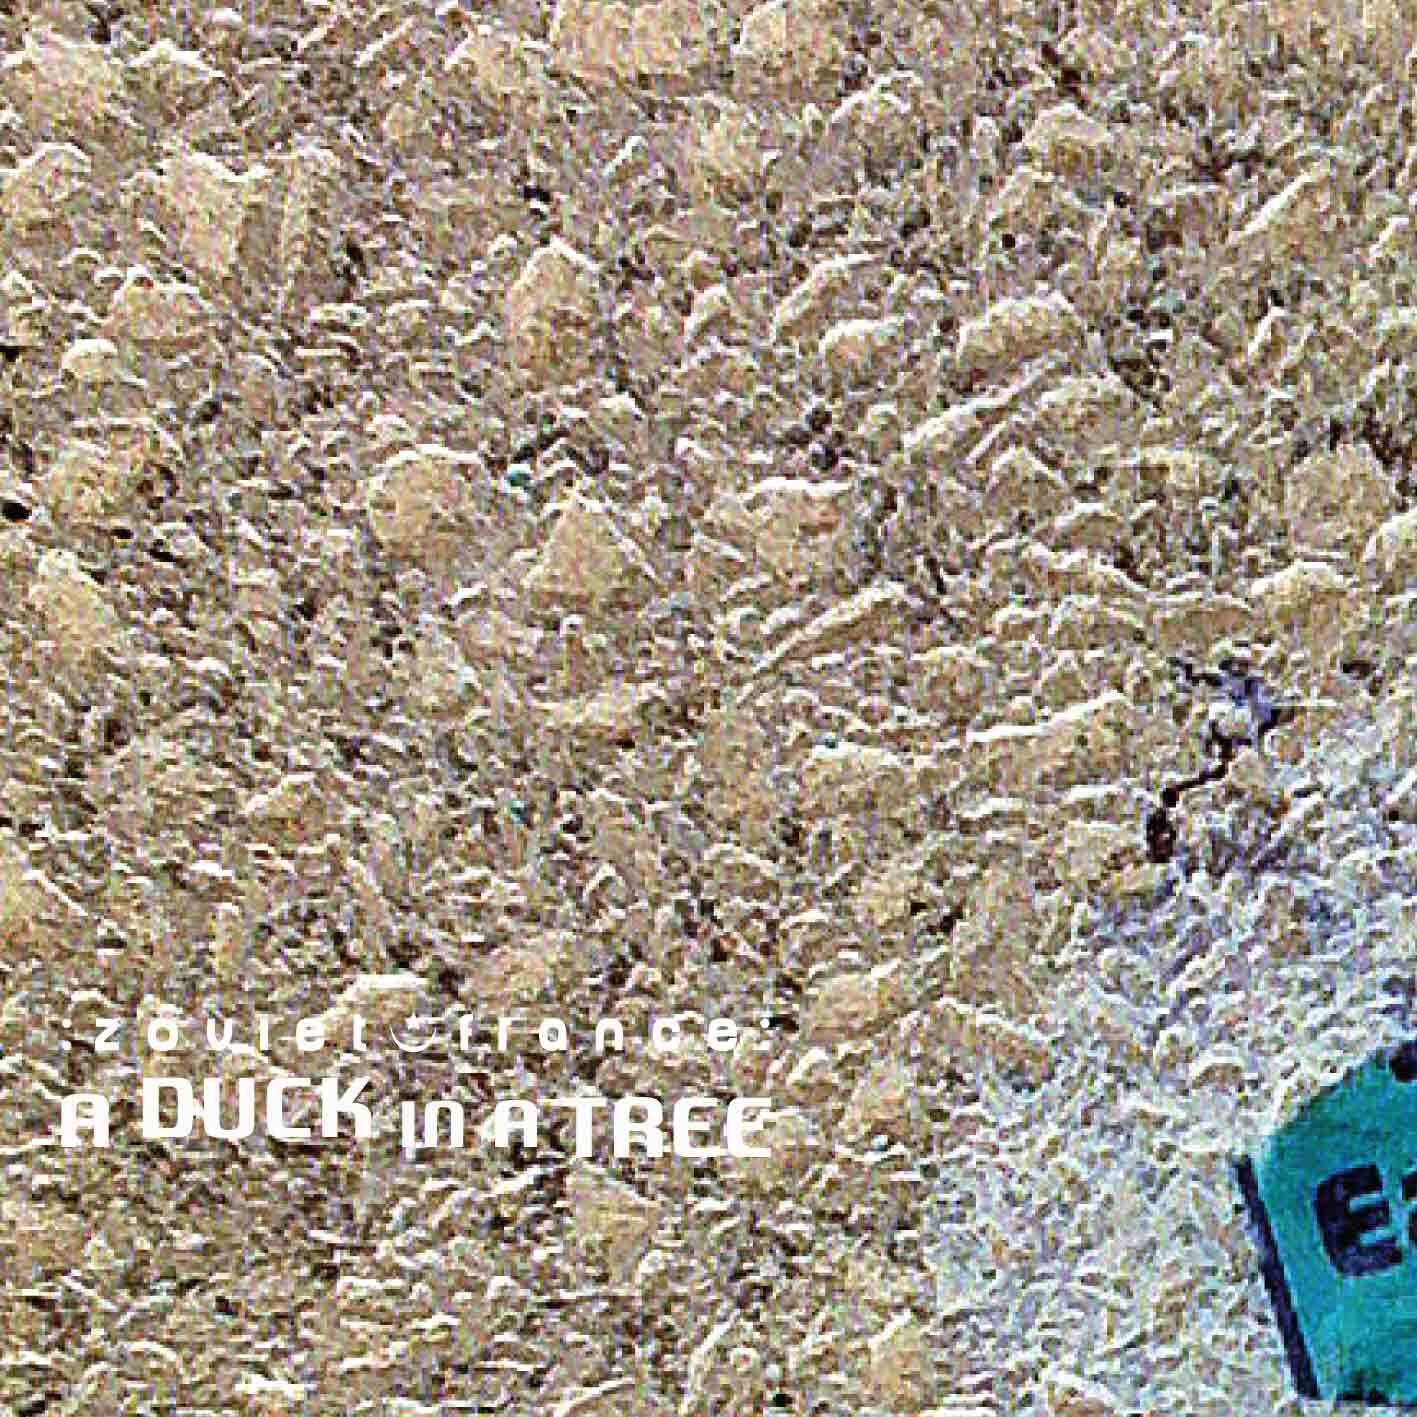 A-Duck-in-a-Tree-2015-01-17-_-Thirteen-F